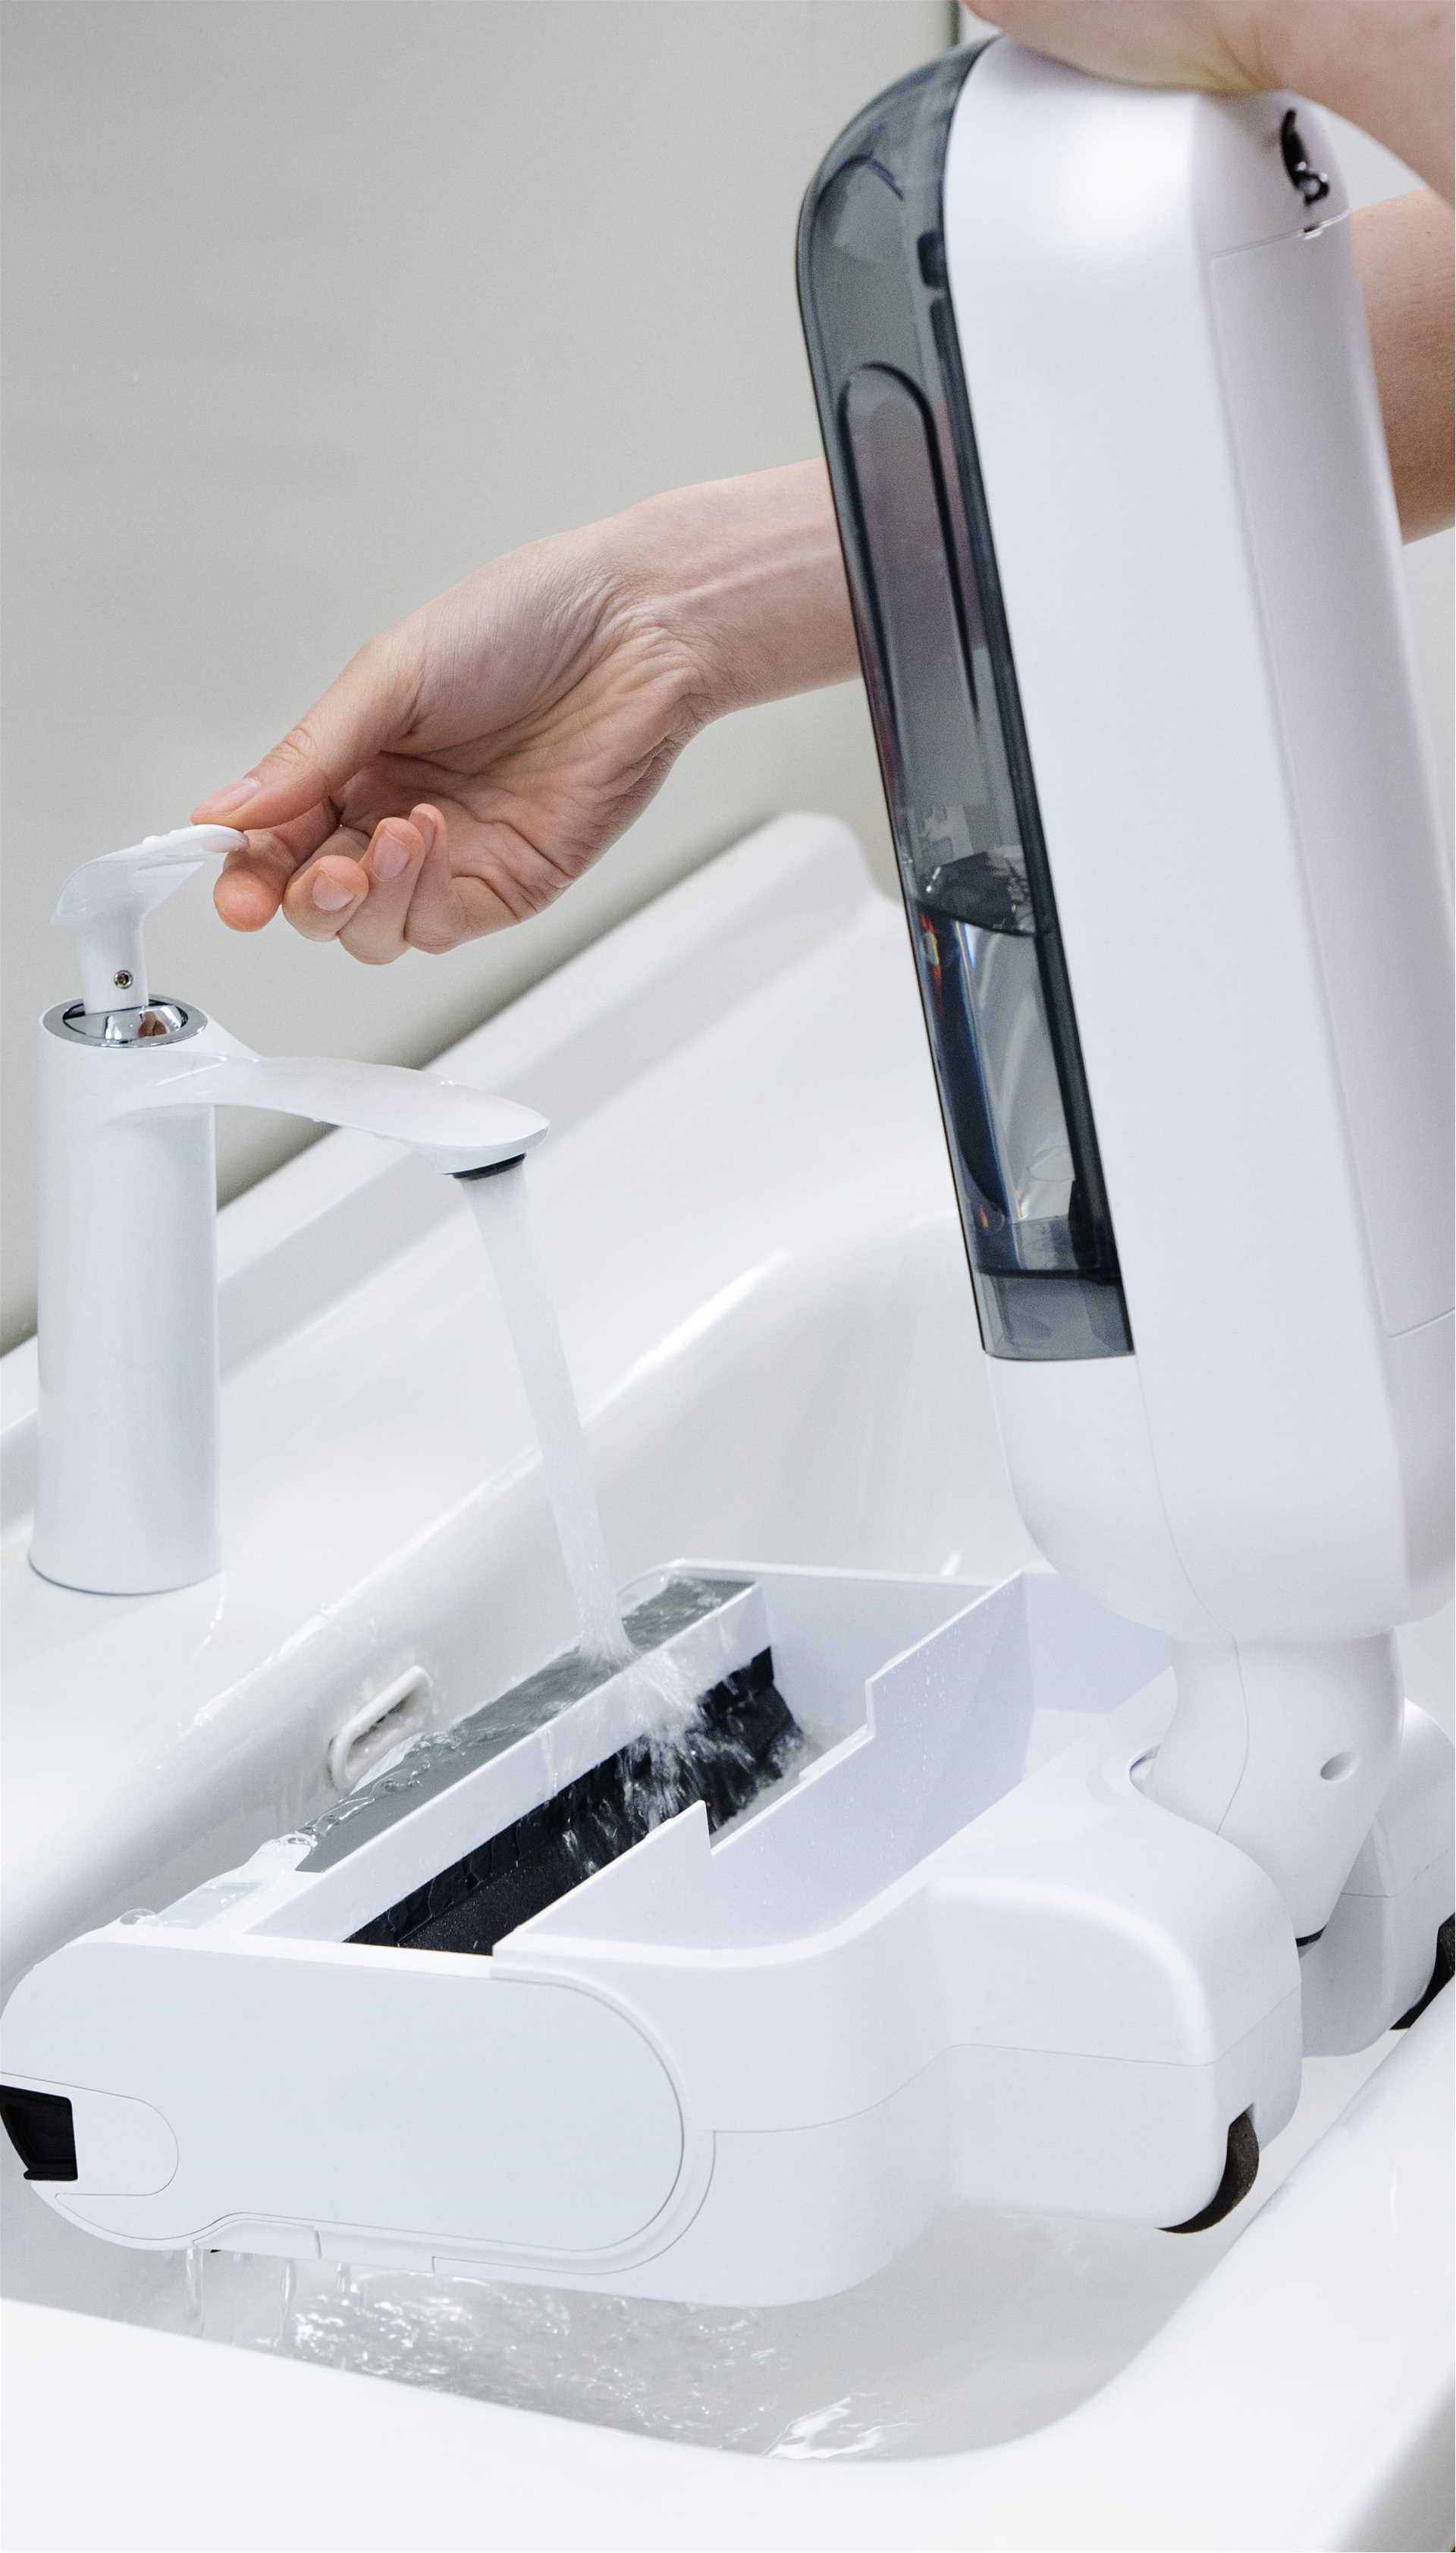 מנקה רצפות שוטף Hizero דגם F100 Bionic לבן - תמונה 4